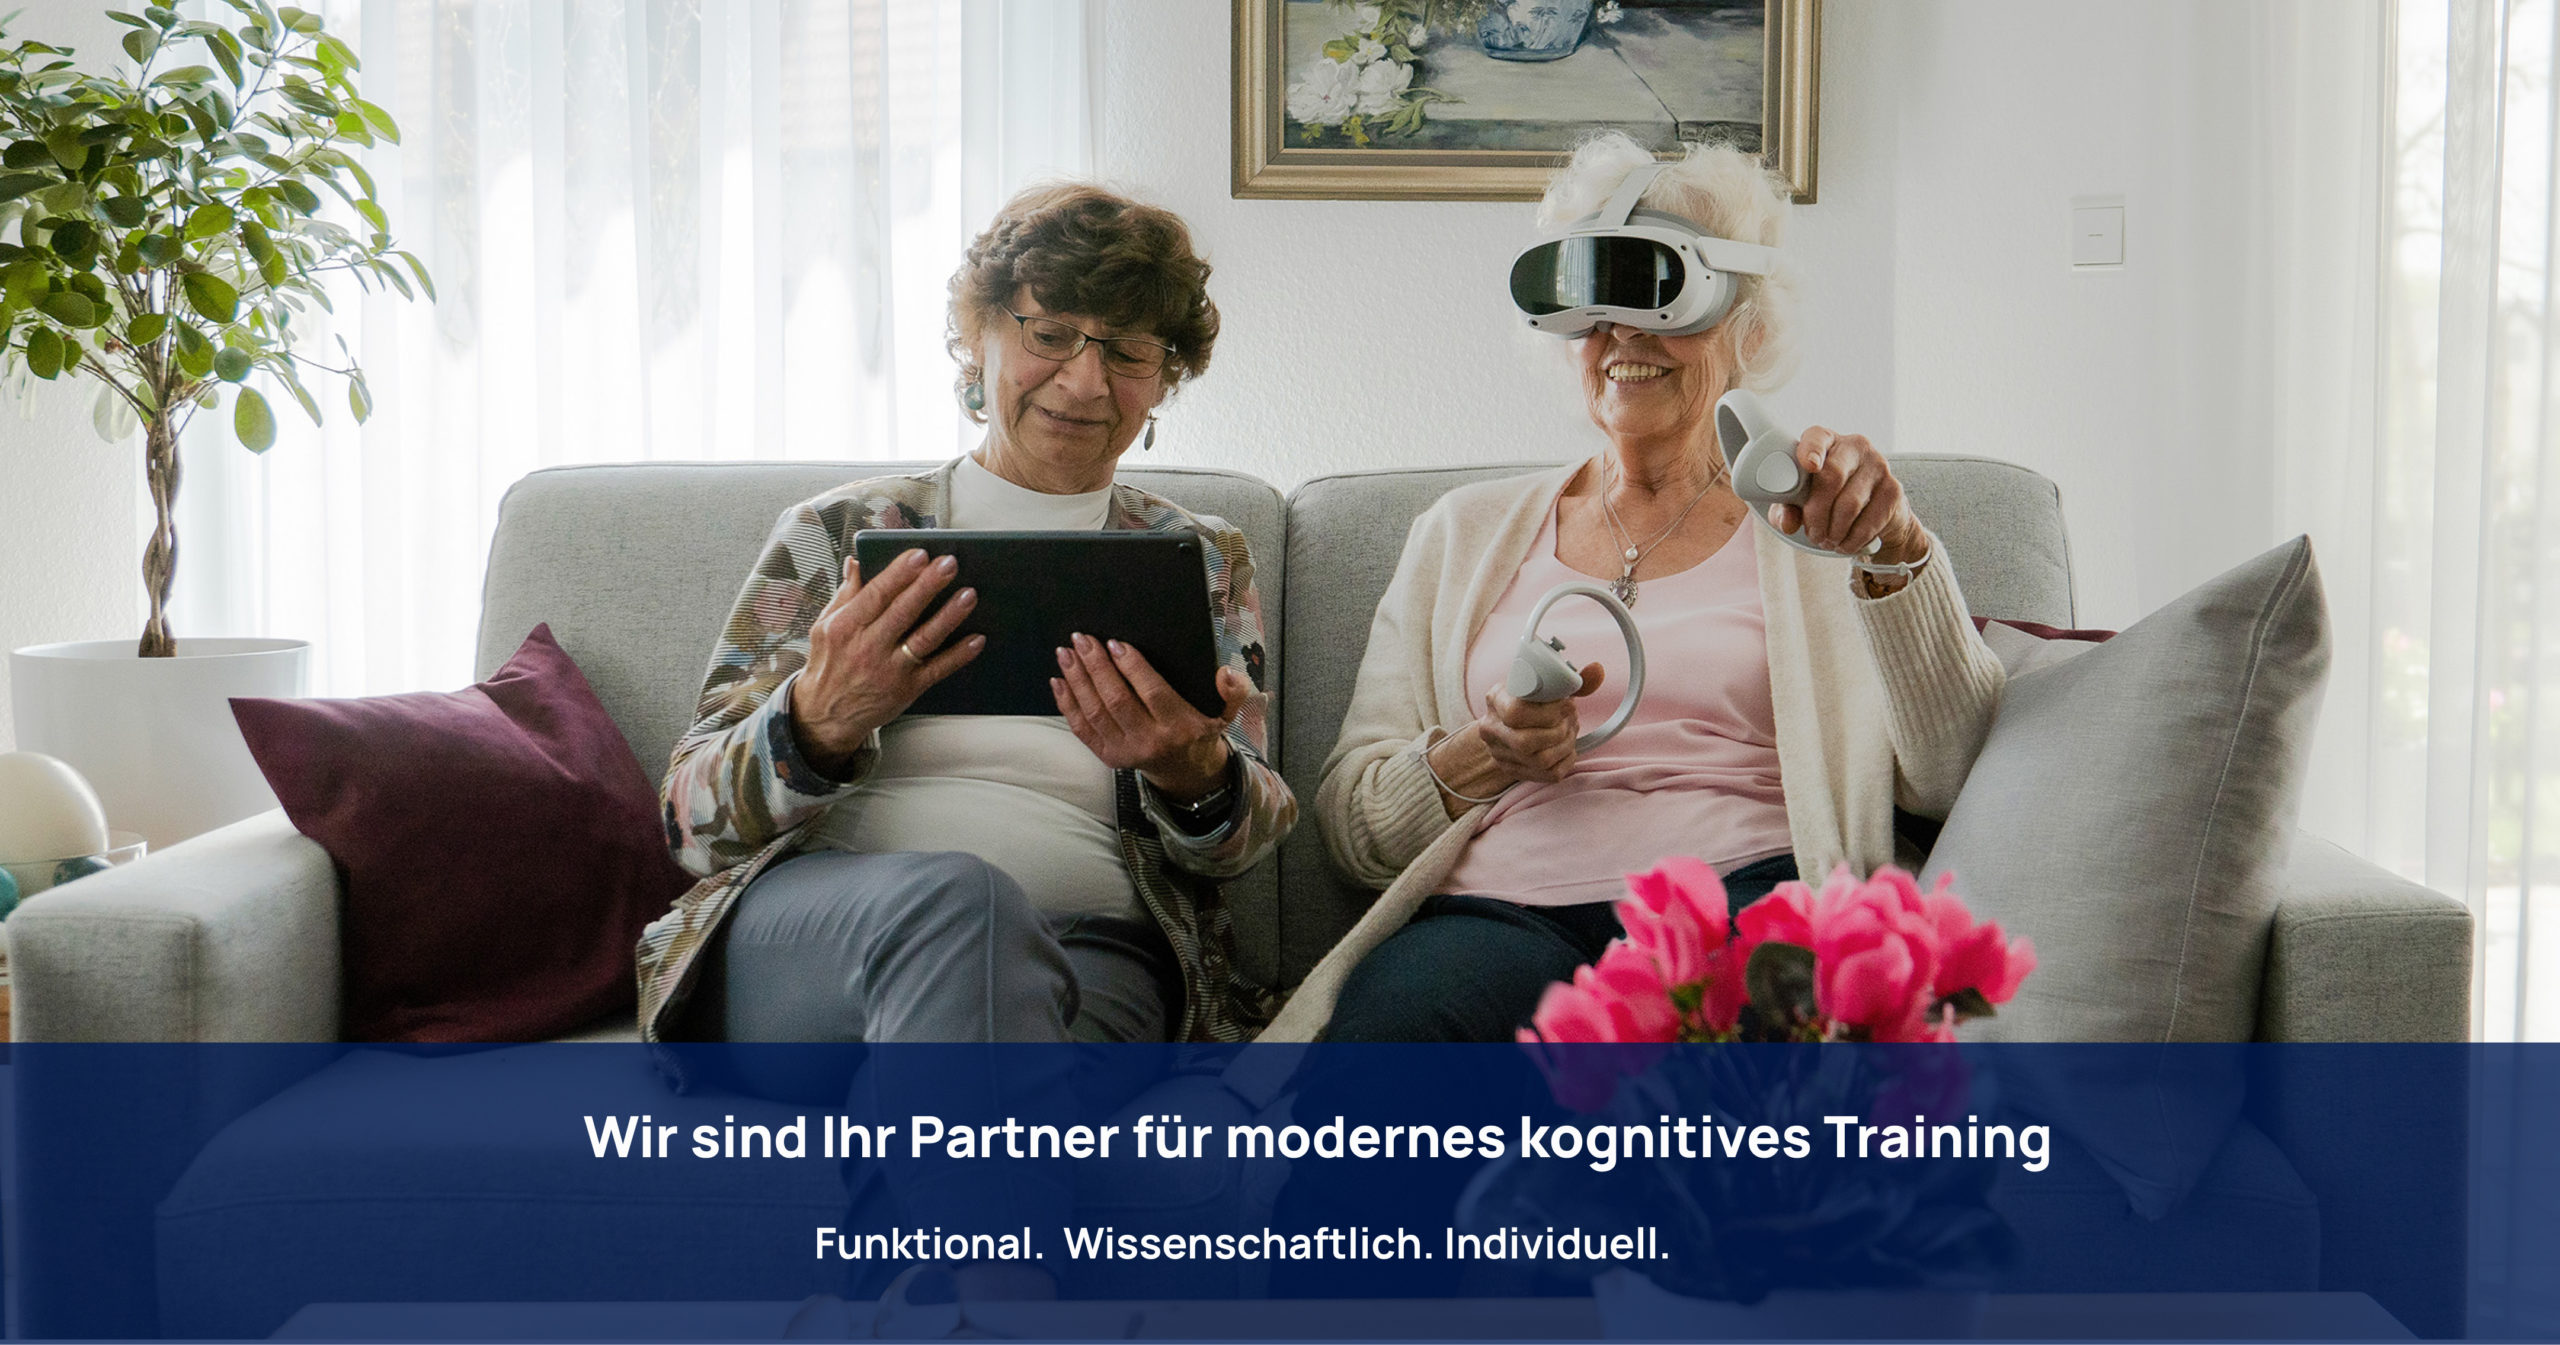 Zwei Seniorinnen auf einem Sofa trainieren gemeinsam mit einer VR-Brille